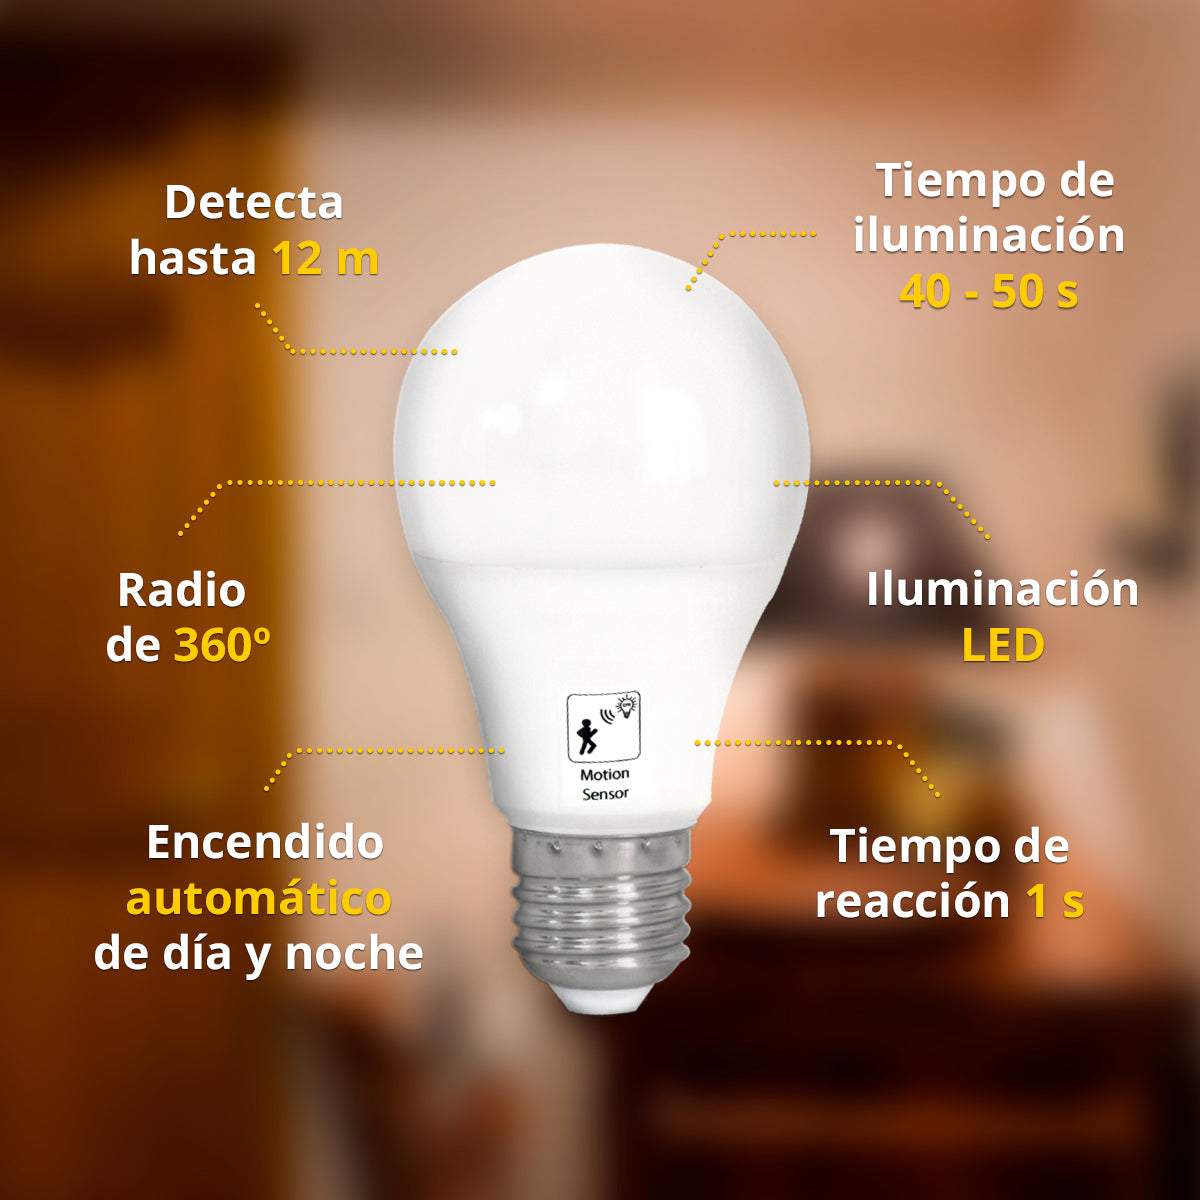 Foco, LED, iluminación, Eficiencia